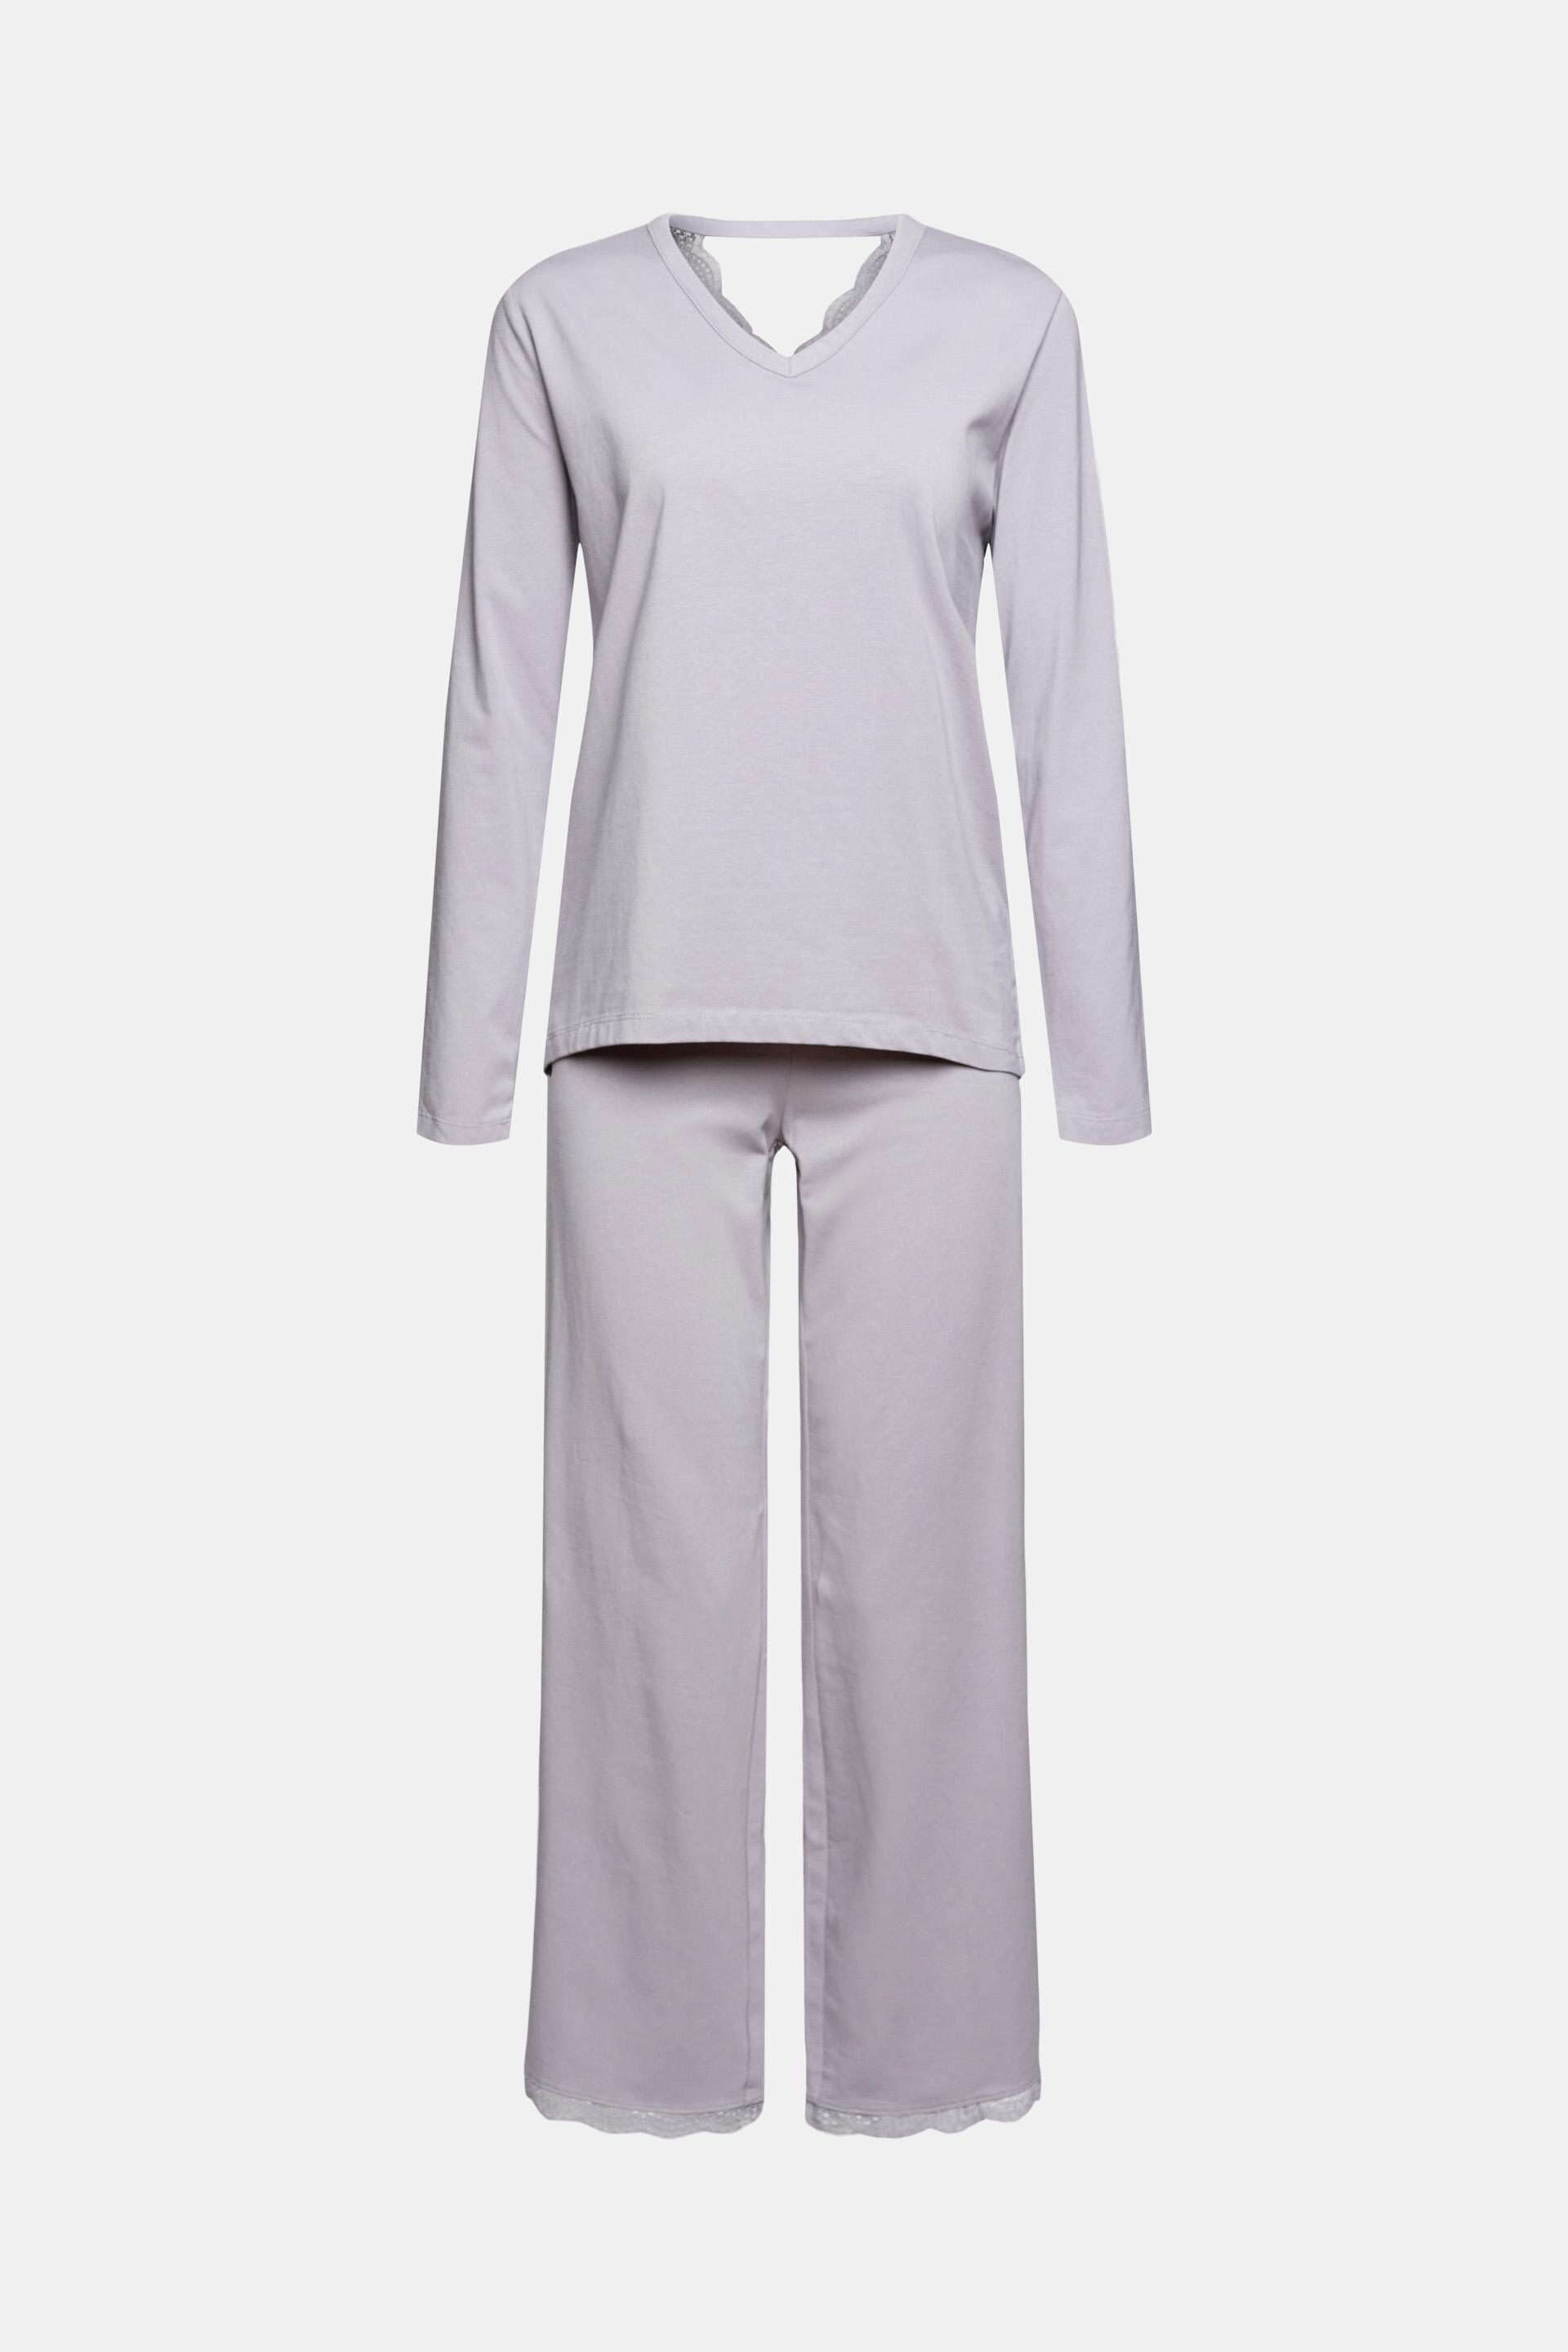 ESPRIT  Schlafanzug/ Zweiteiliger Pyjama  Gr.104-146  *grau/türkis *NEU!* 